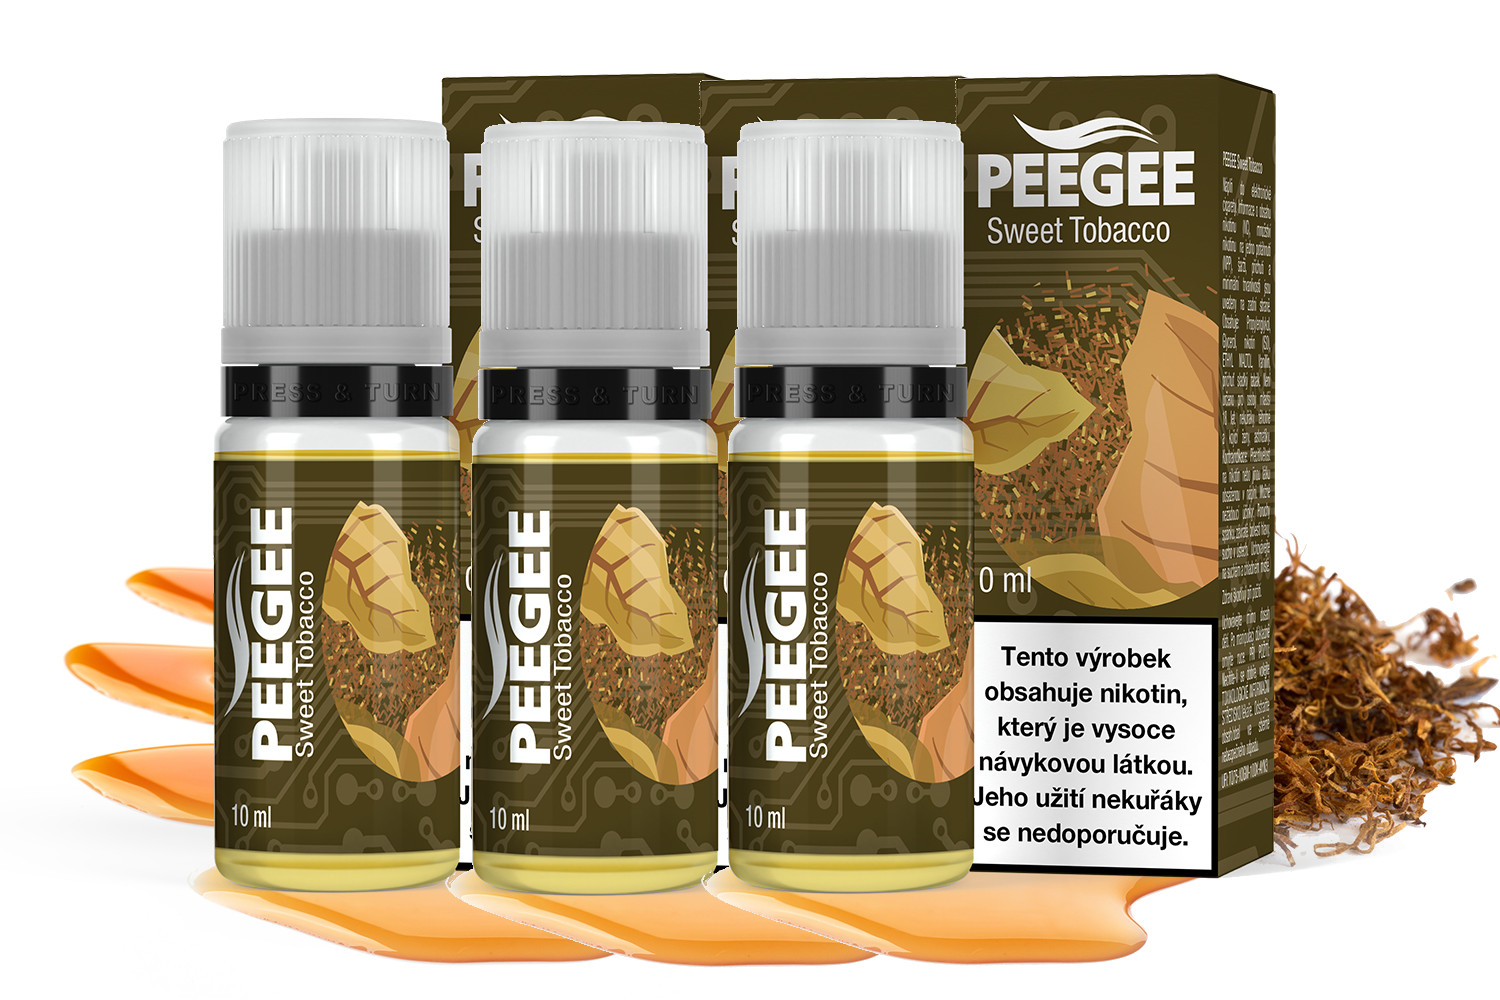 PEEGEE - Sladký tabák (Sweet Tobacco) 3x10ml Obsah nikotinu: 6mg